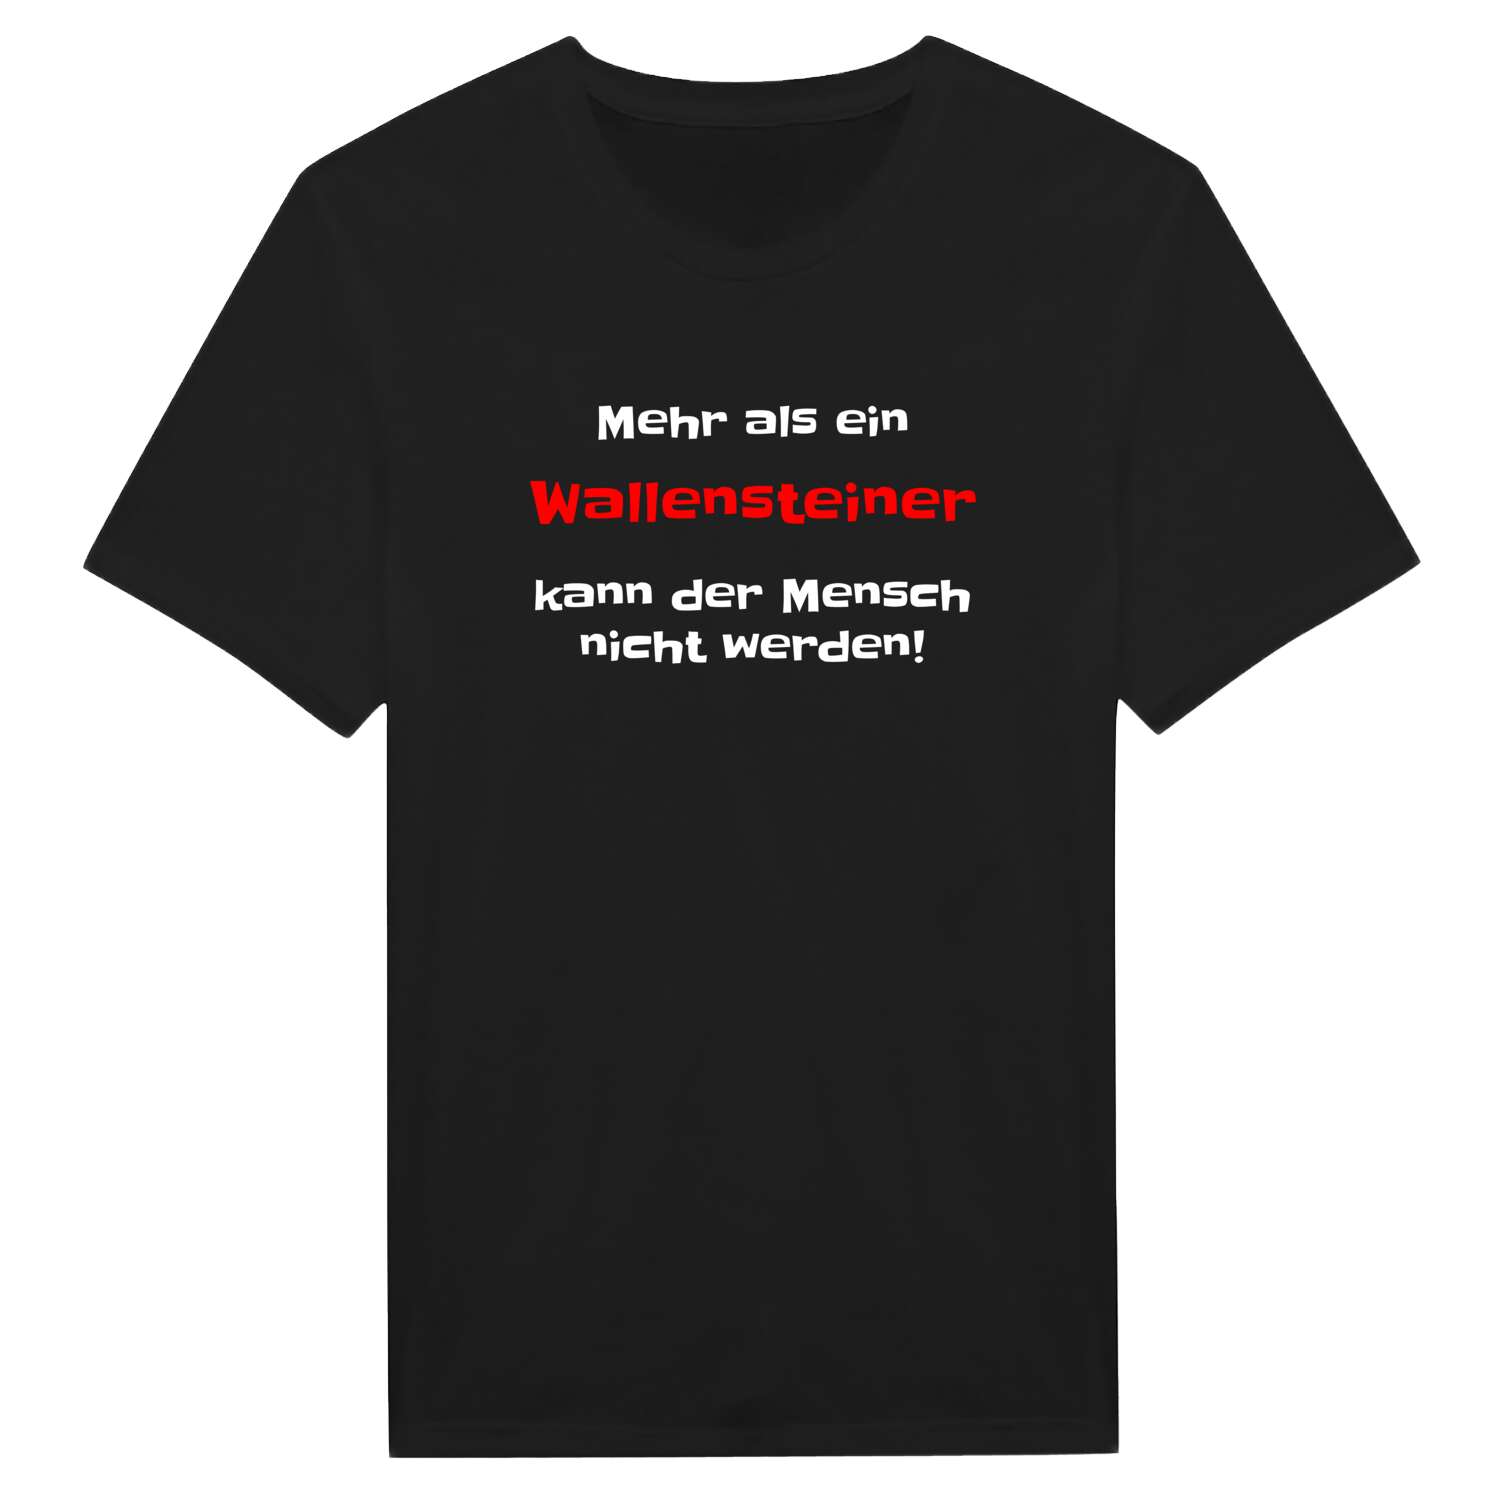 Wallenstein T-Shirt »Mehr als ein«